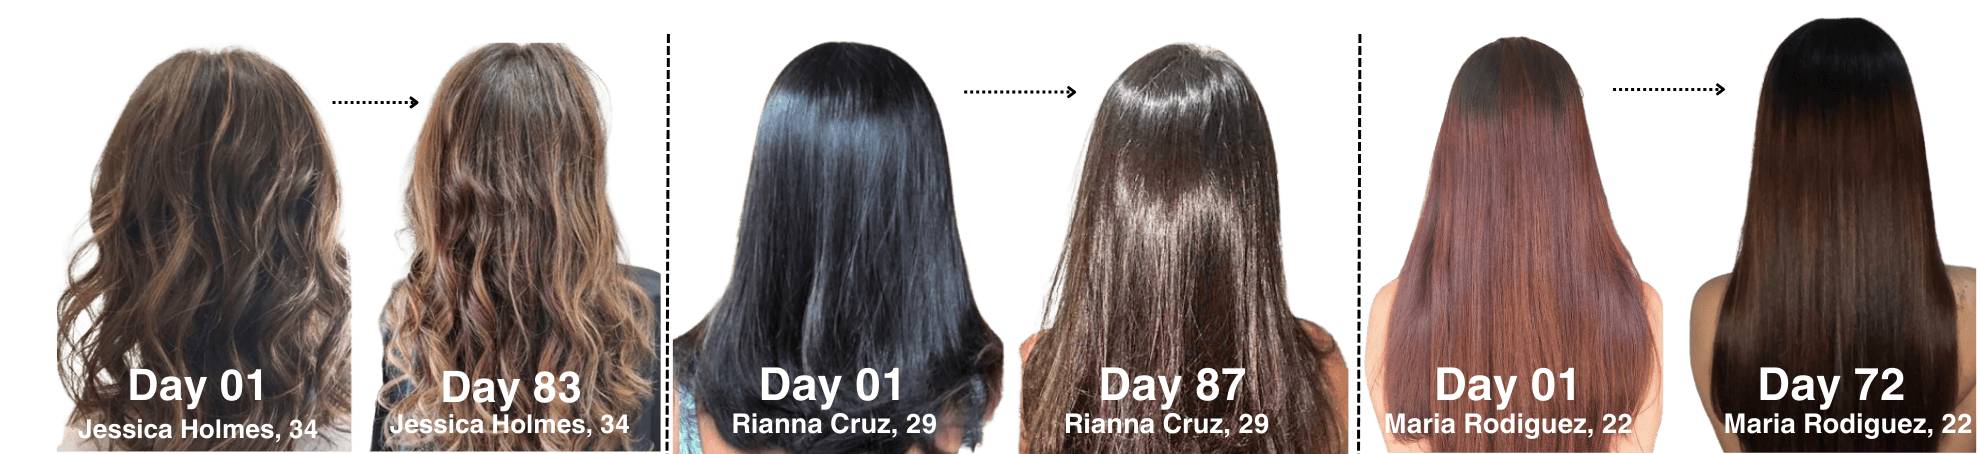 Jessica, Rianna and Maria - Beautiful Hair Photos - Before And After Photos - With GummBear.com "Grow Hair Grow: Hair Vitamin Gummies"